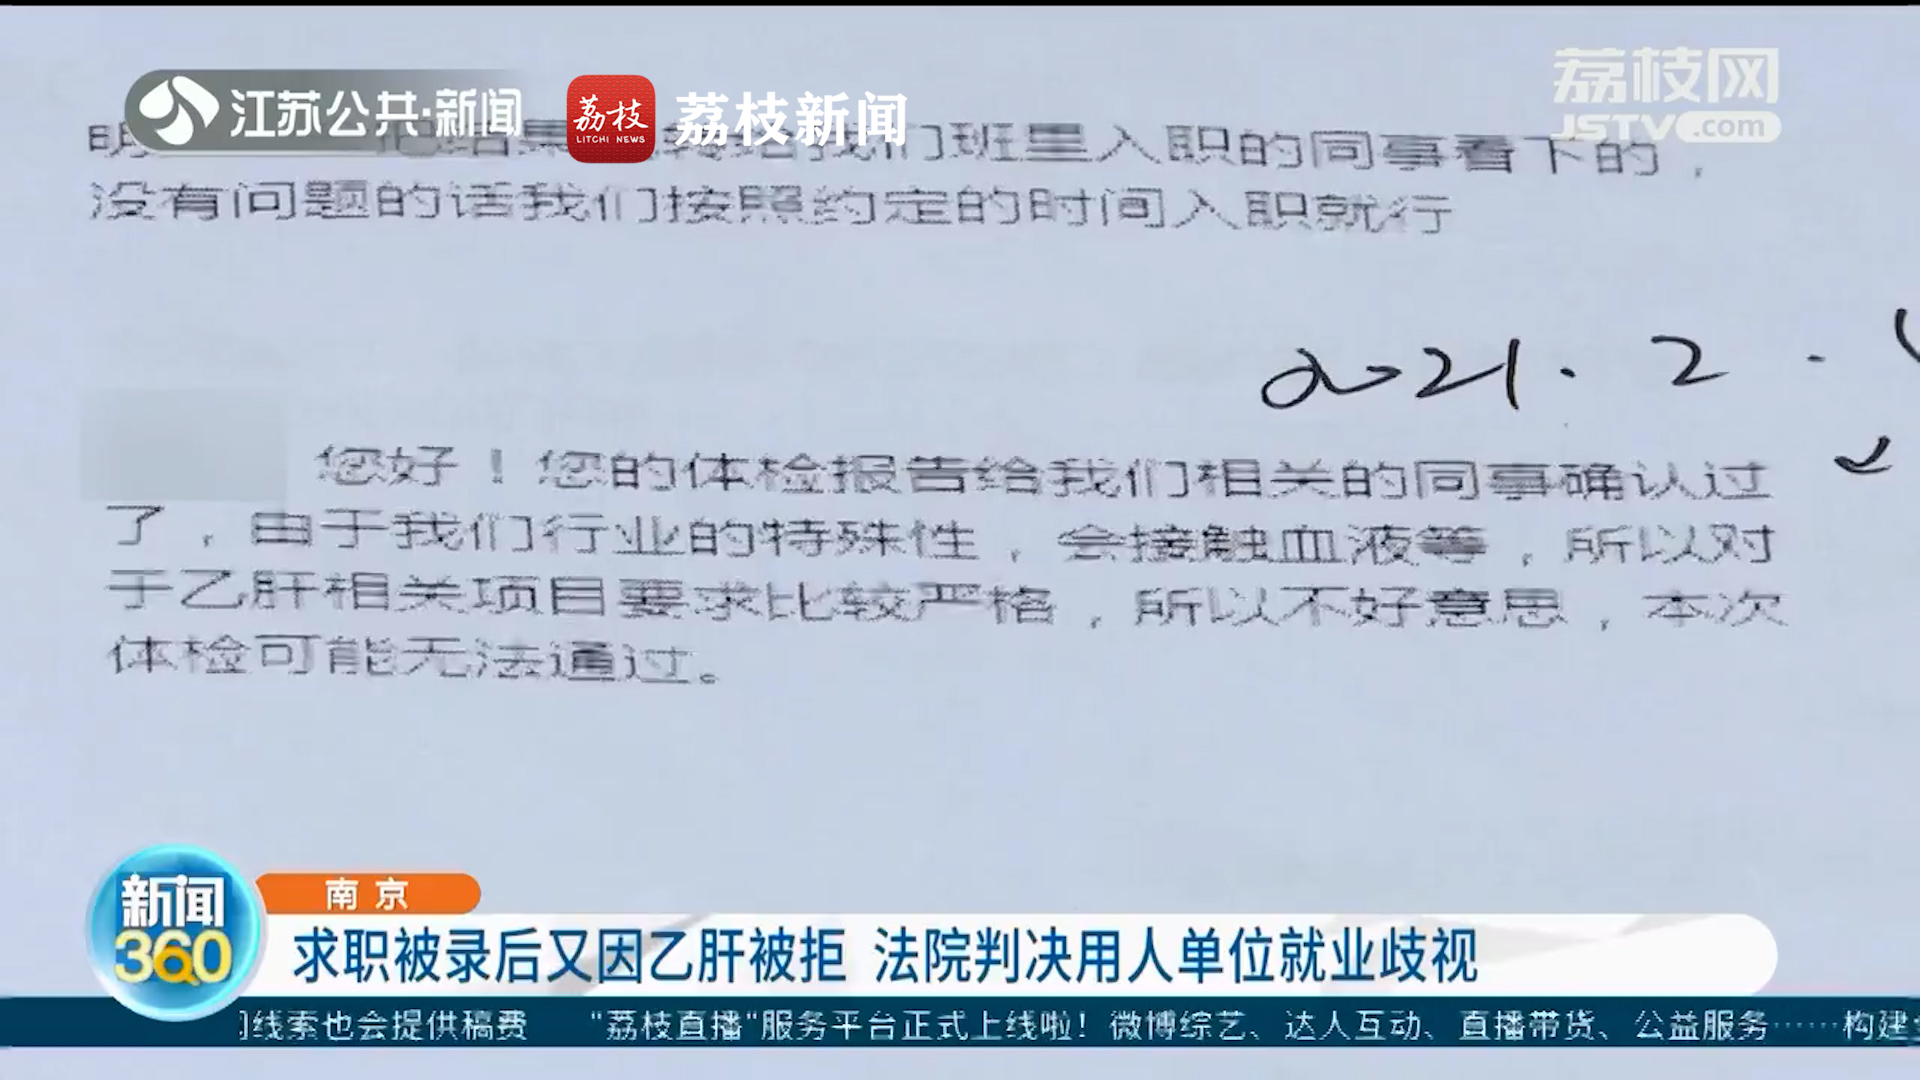 南京 求职被录后又因乙肝被拒 法院判决用人单位就业歧视 